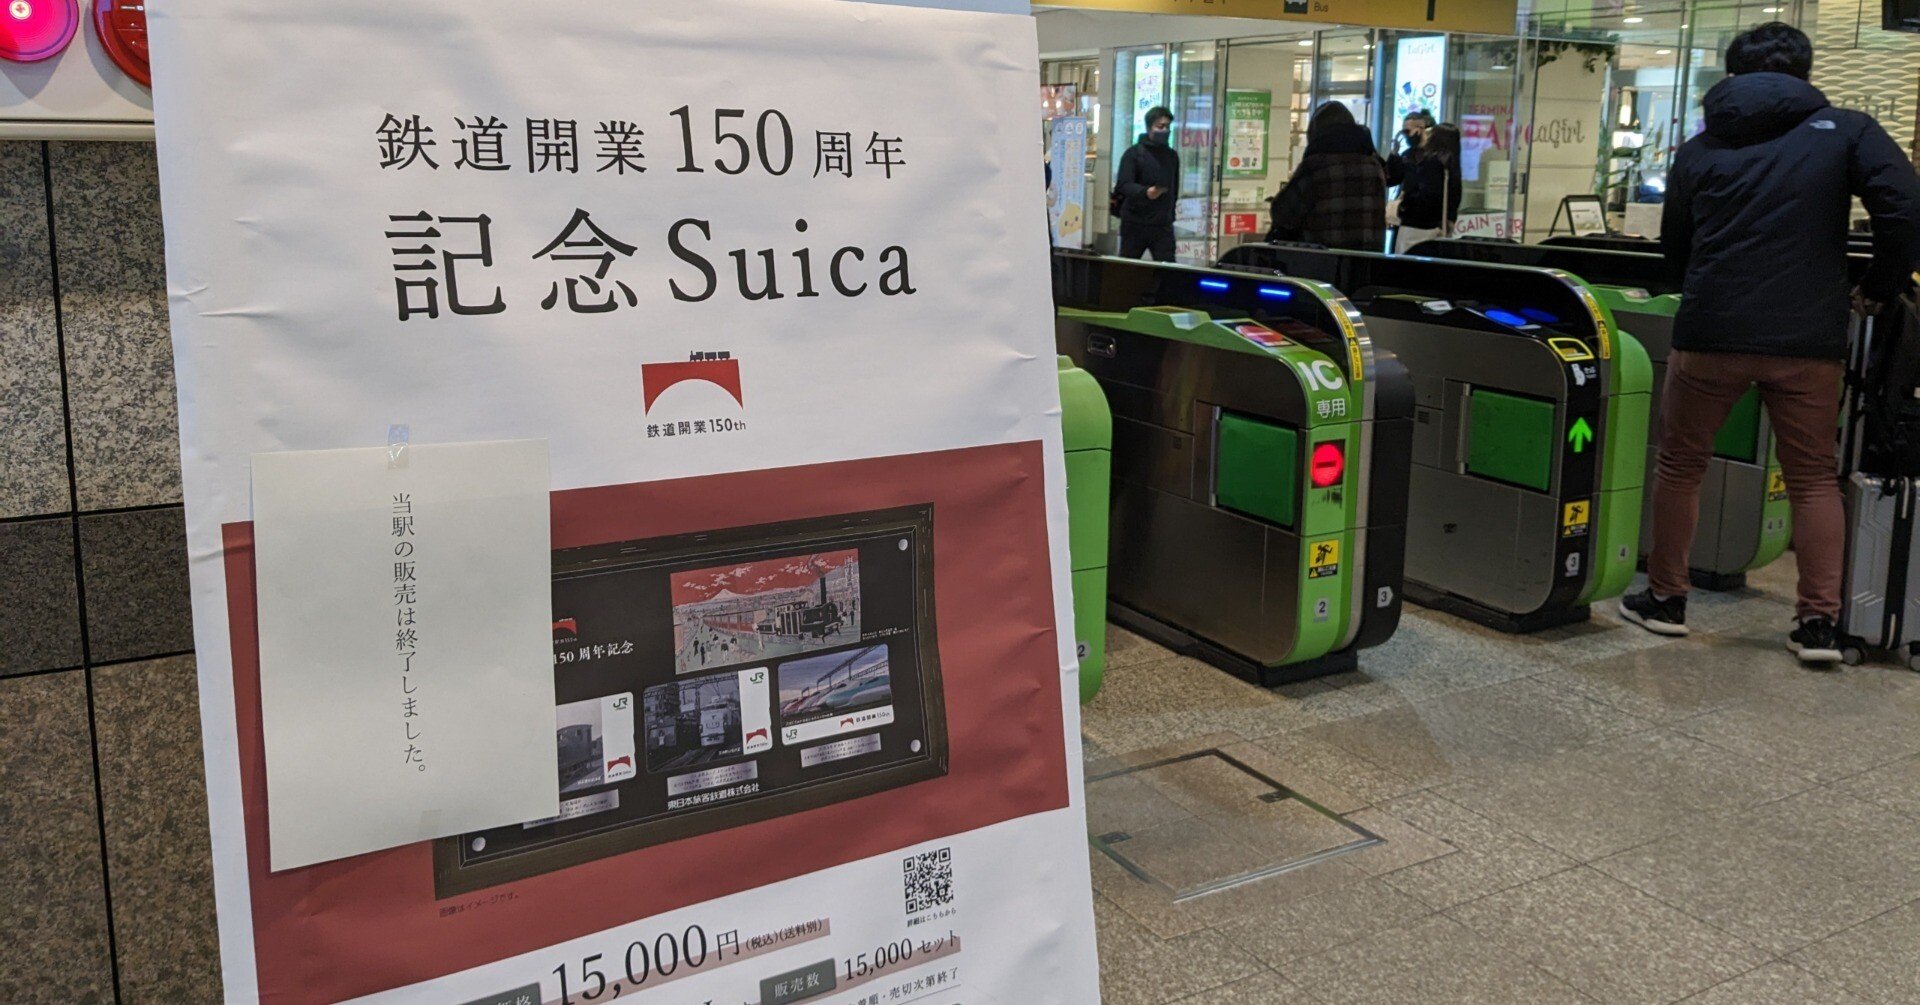 鉄道開業150周年記念Suica駅で投げ売り。入念なルール作りも 